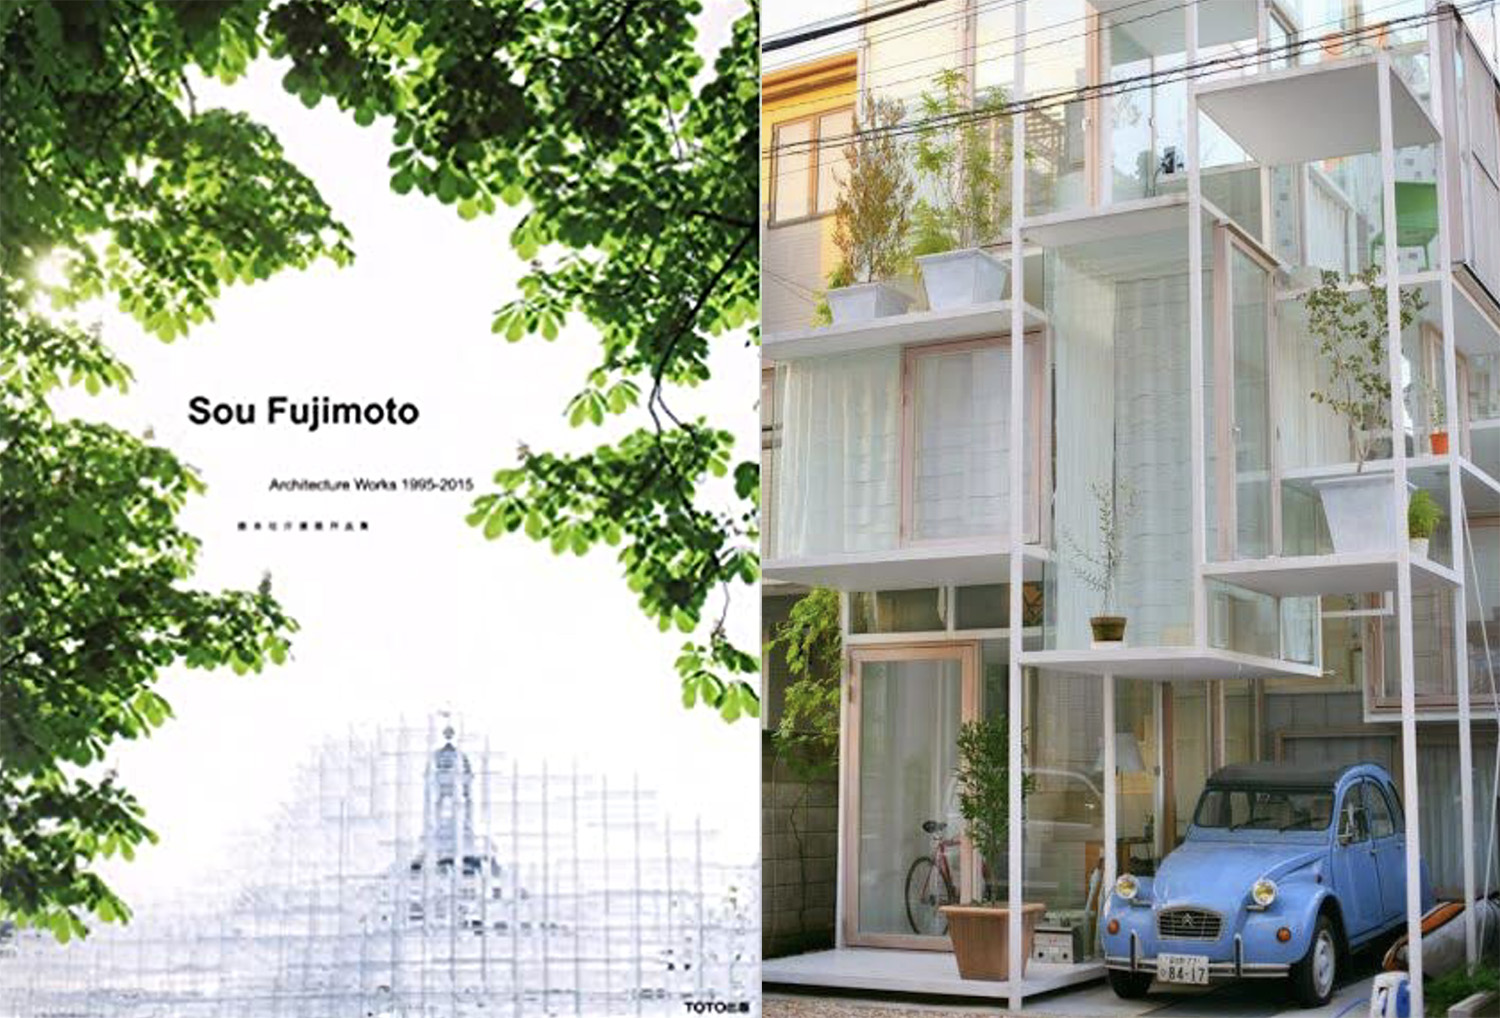 Duas imagens lado a lado. À esquerda, capa do livro do arquiteto Sou Fujimoto; à direita, casa branca com estrutura branca de vigas aparentes, com carro azul estacionado na garagem do térreo.